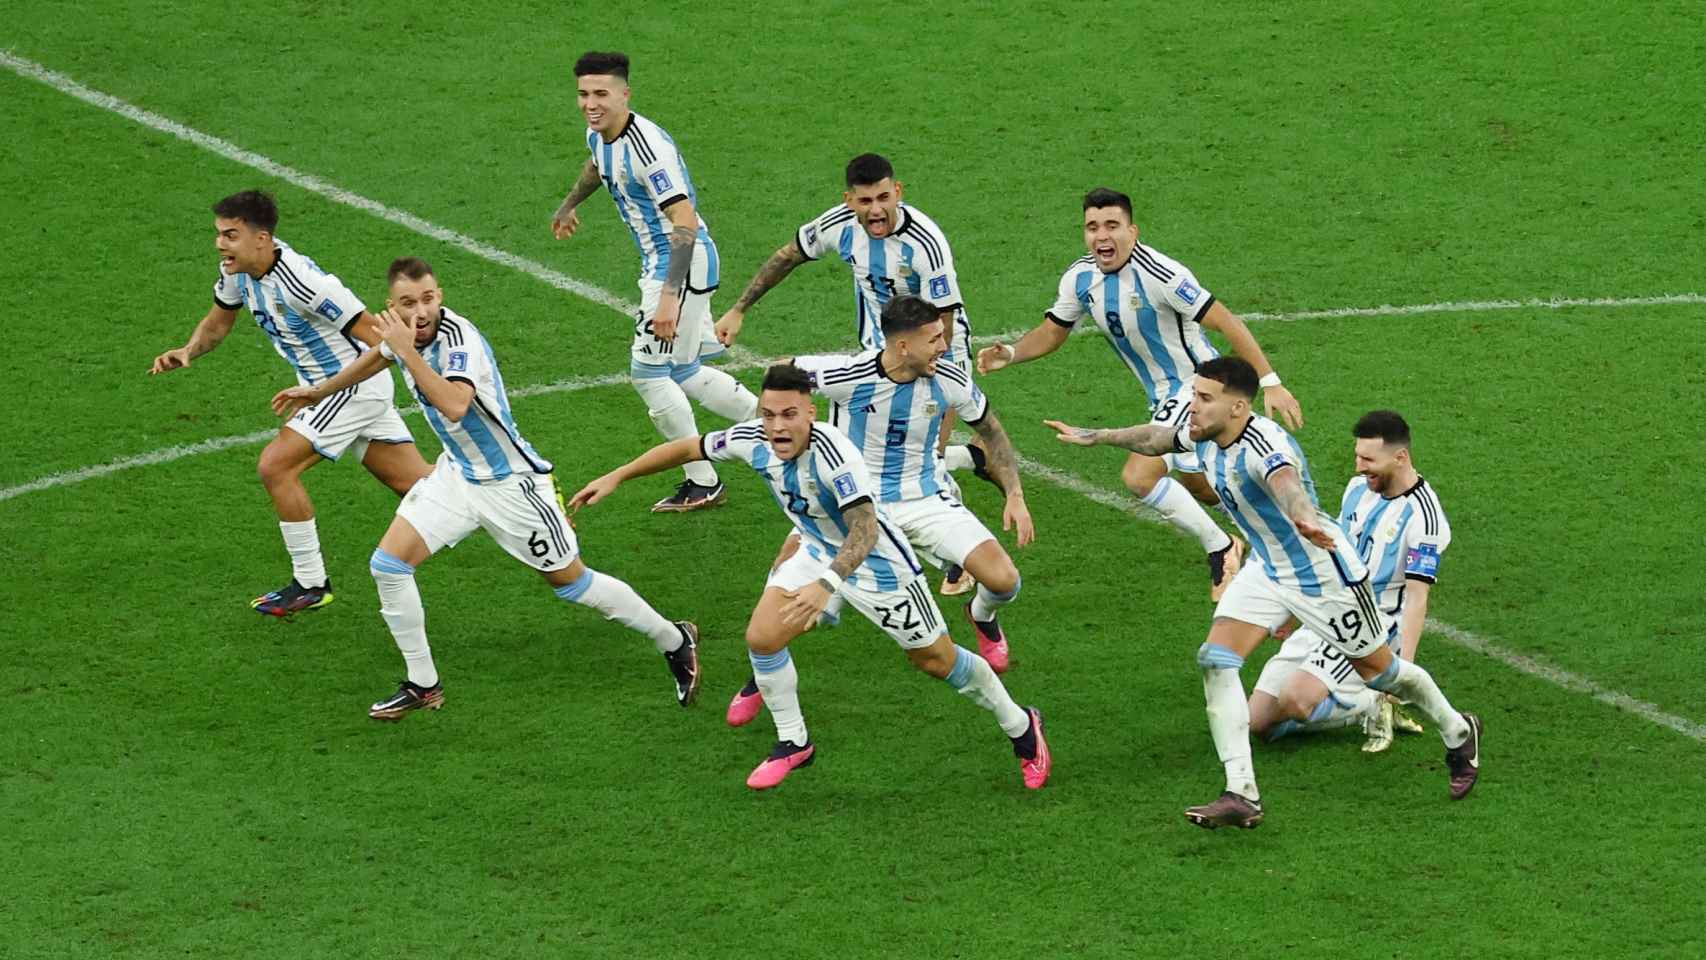 Los futbolistas argentinos corren a celebrar la victoria.